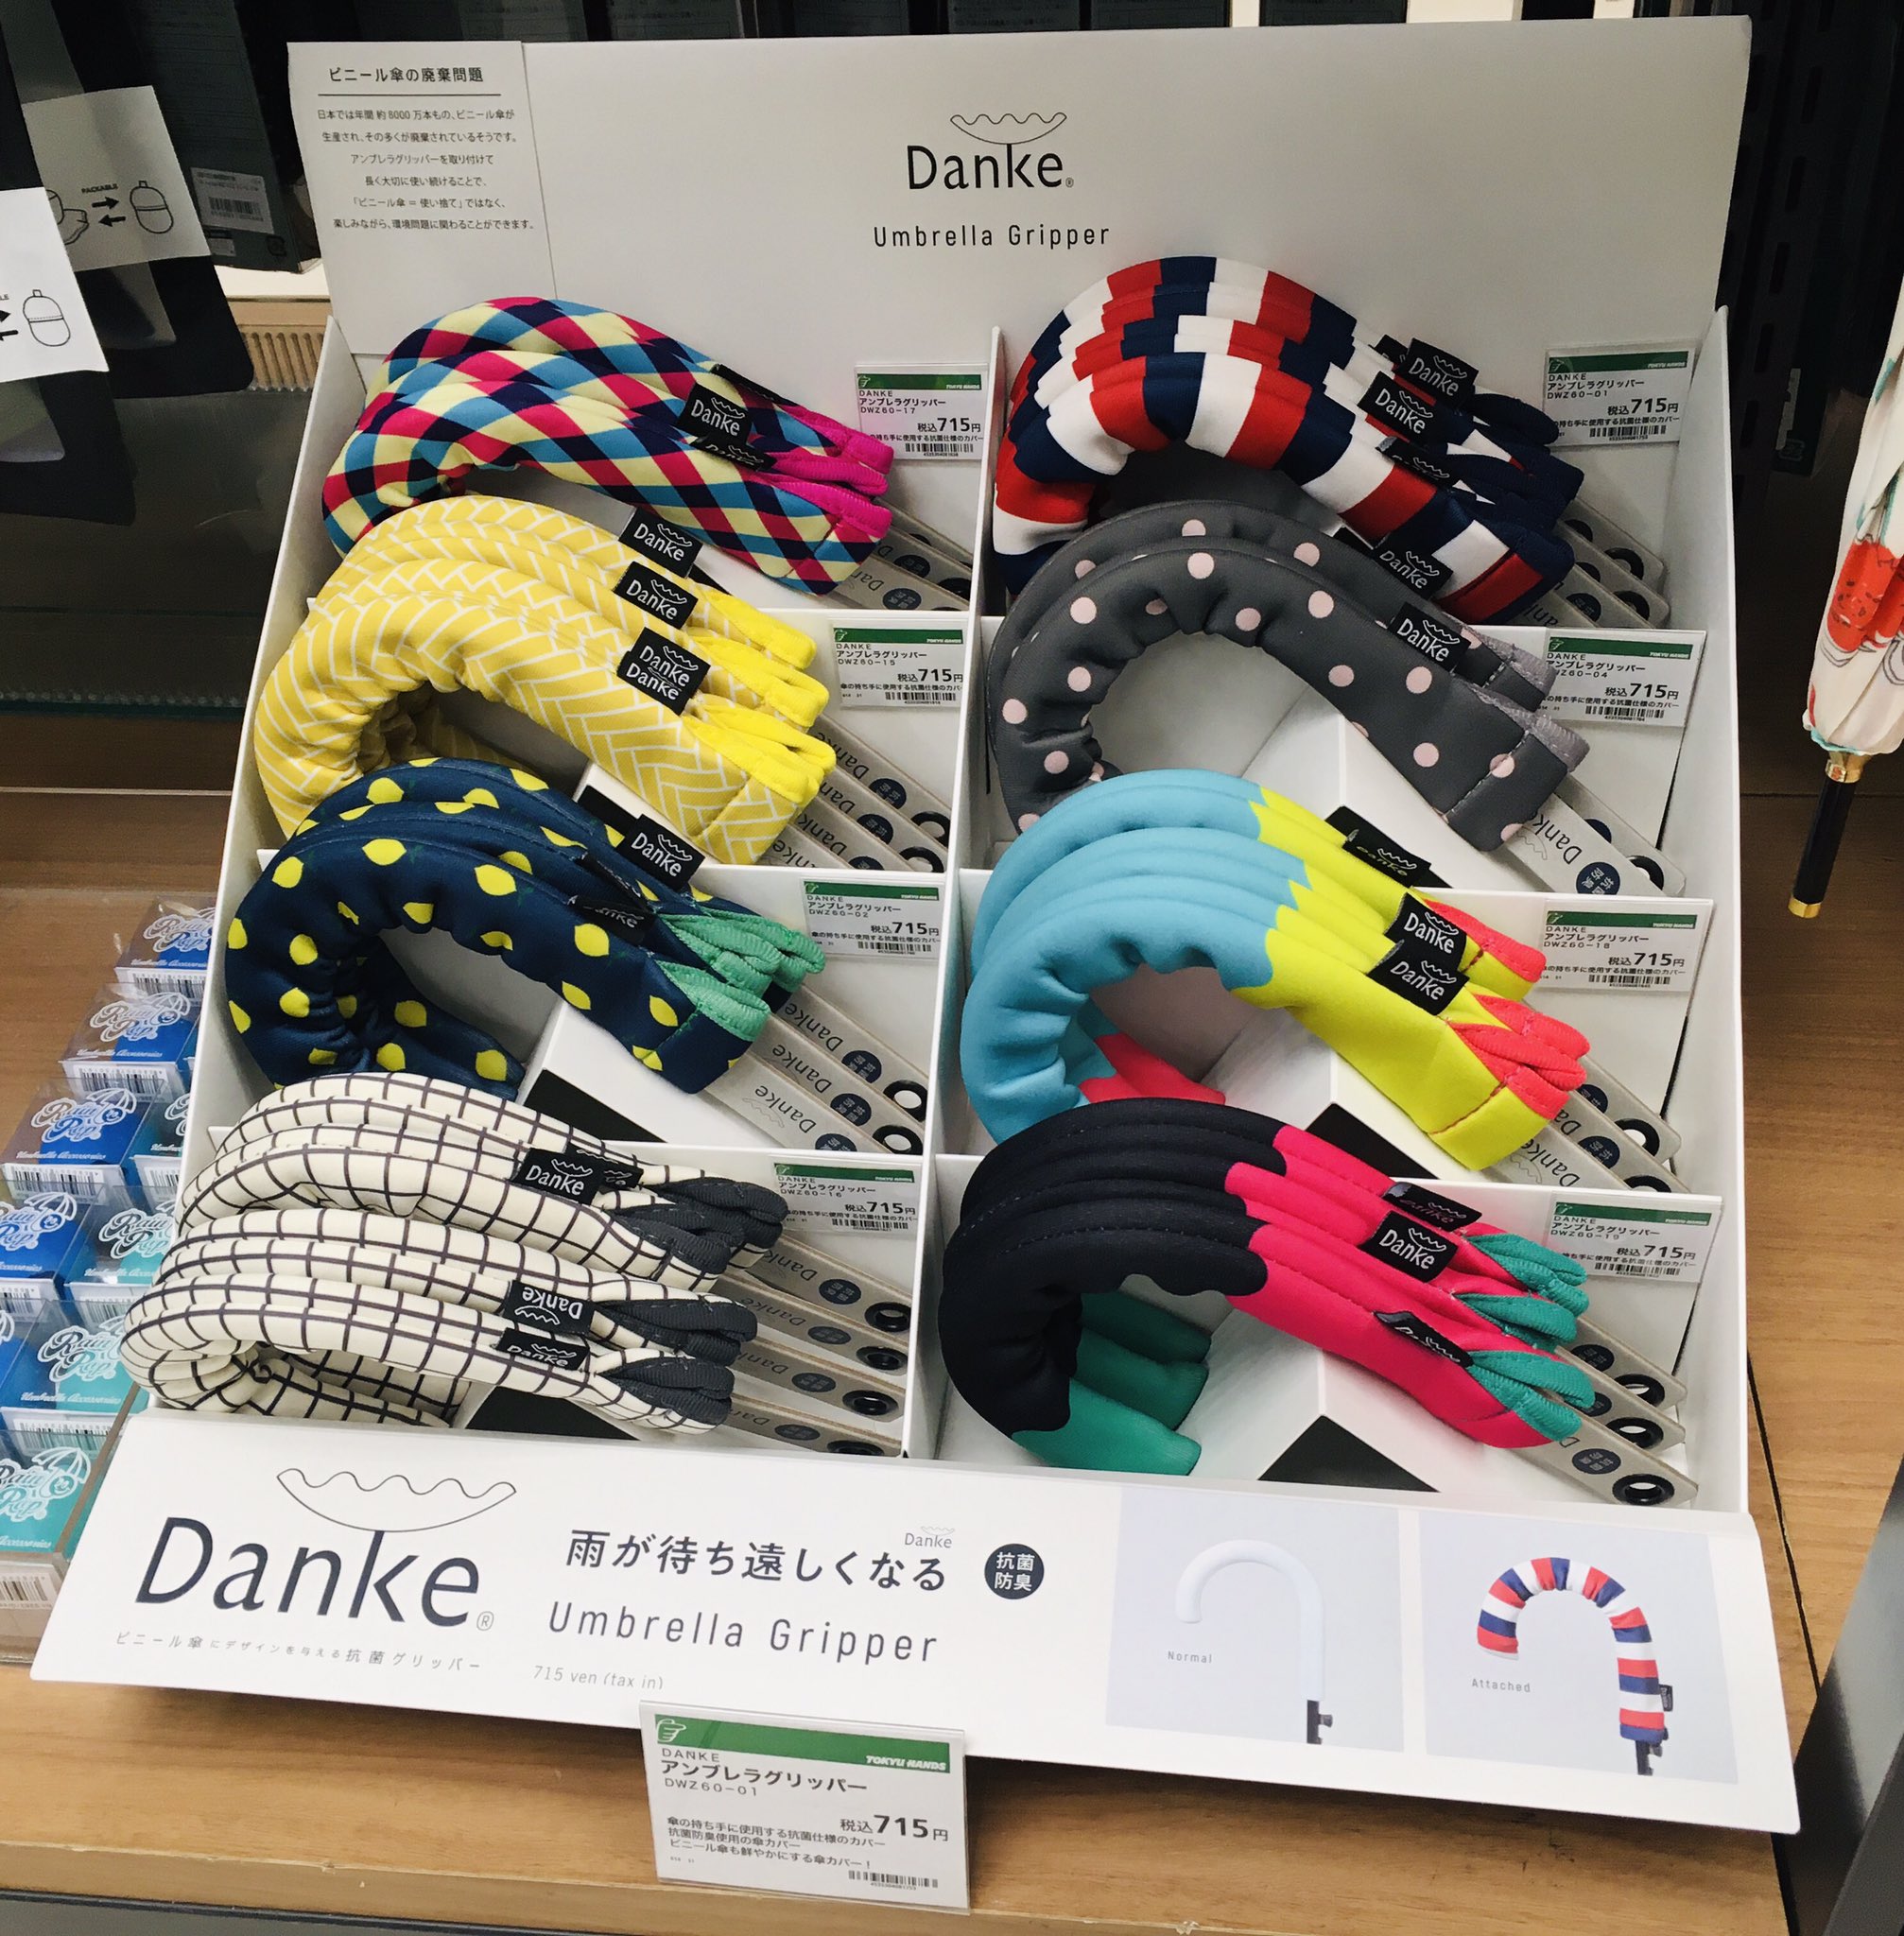 東急ハンズ渋谷店 自分の傘が一目でわかる Danke ダンケ アンブレラグリッパー ビニール傘 の持ち手部分をカスタムできるカラフルなカバーです 目印にもなりますし 自分のビニール傘に愛着も湧きますね 約16 mmの太さのグリップに